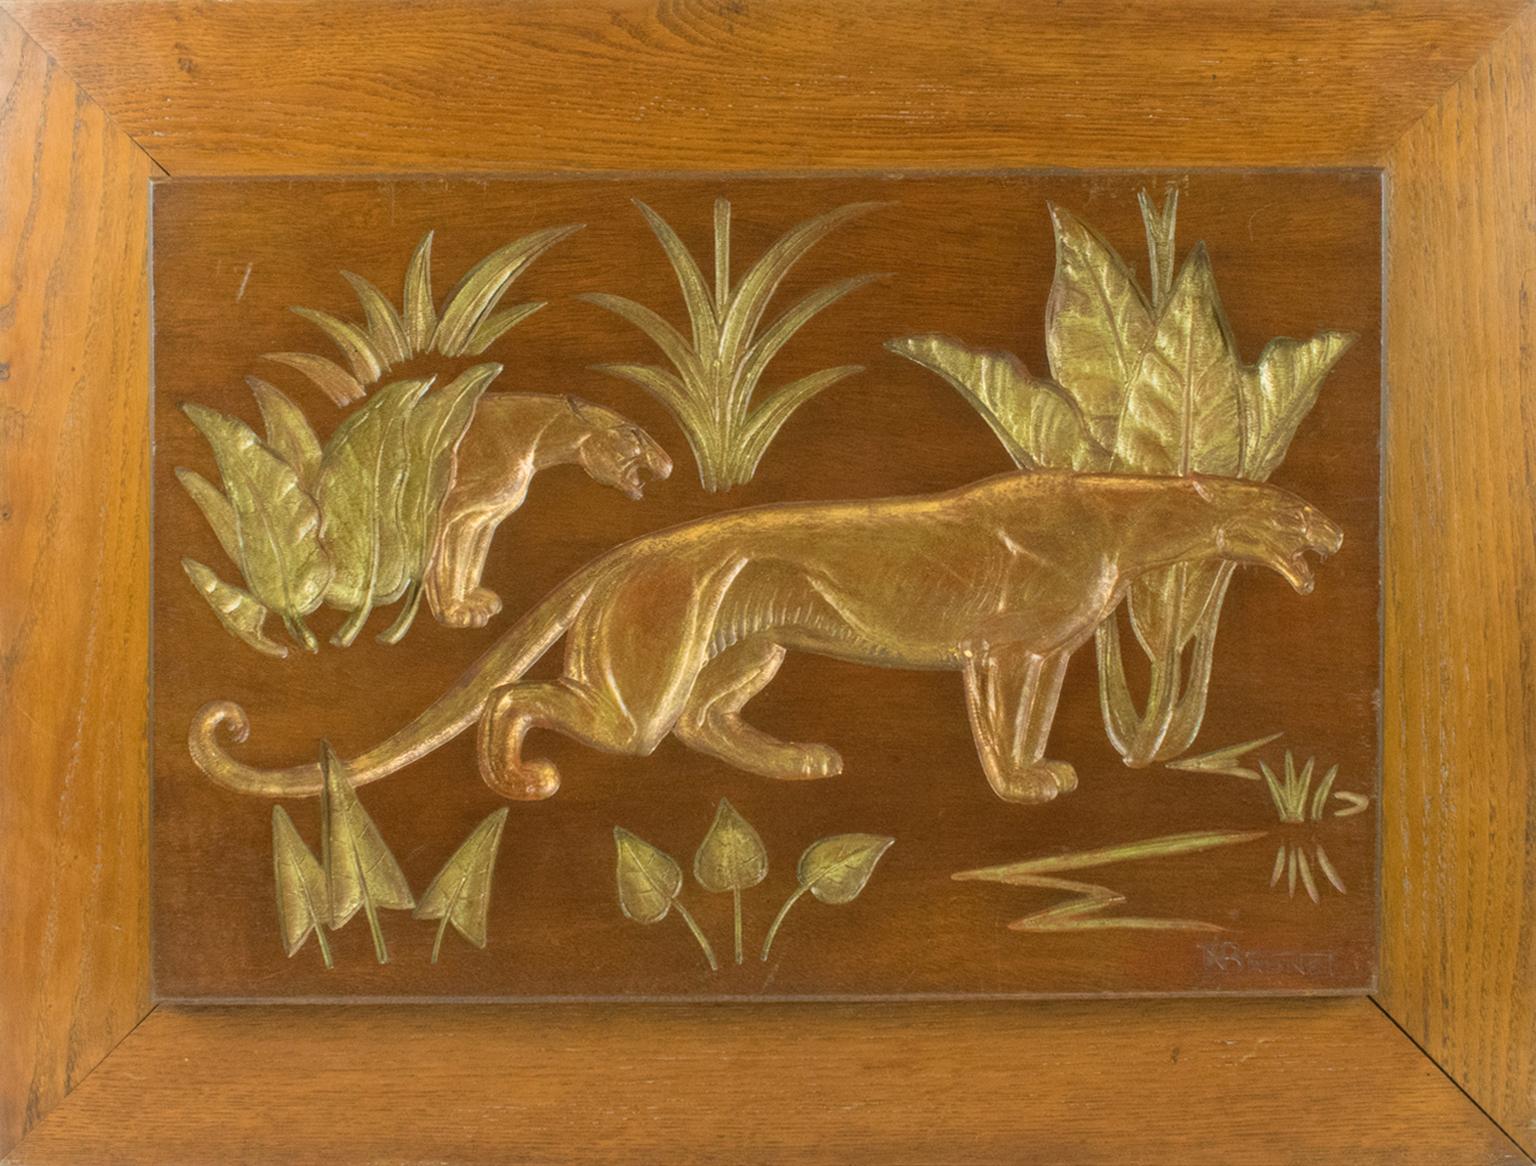 Panthers in the Jungle Art Deco geschnitzte vergoldete Holztafel von N. R. Brunet